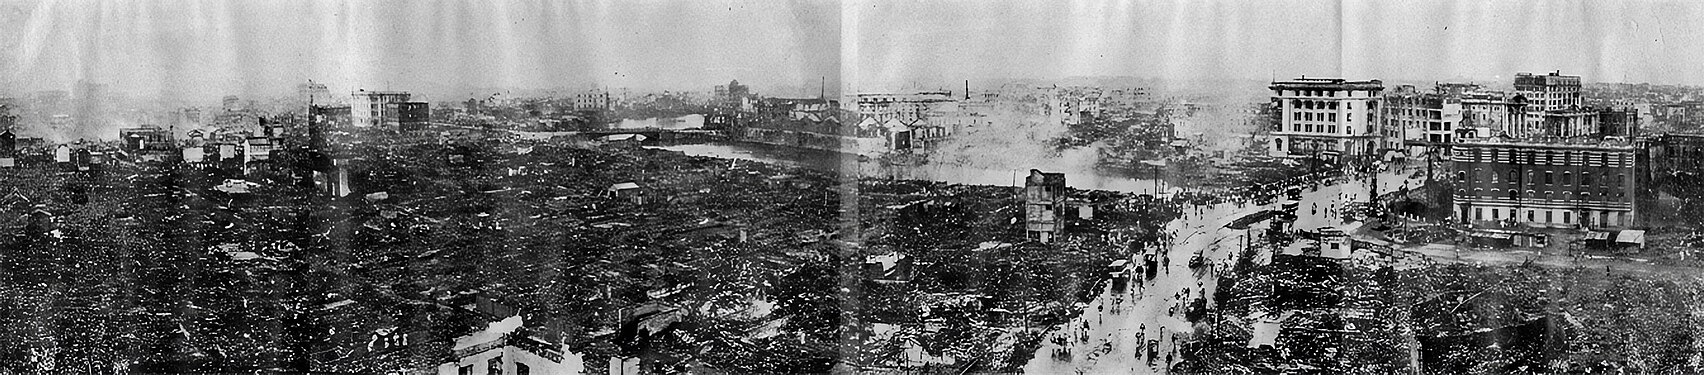 Ødelæggelsen af Nihonbashi og Kanda set fra taget af Dai-ichi Sogo Building i Kyobashi